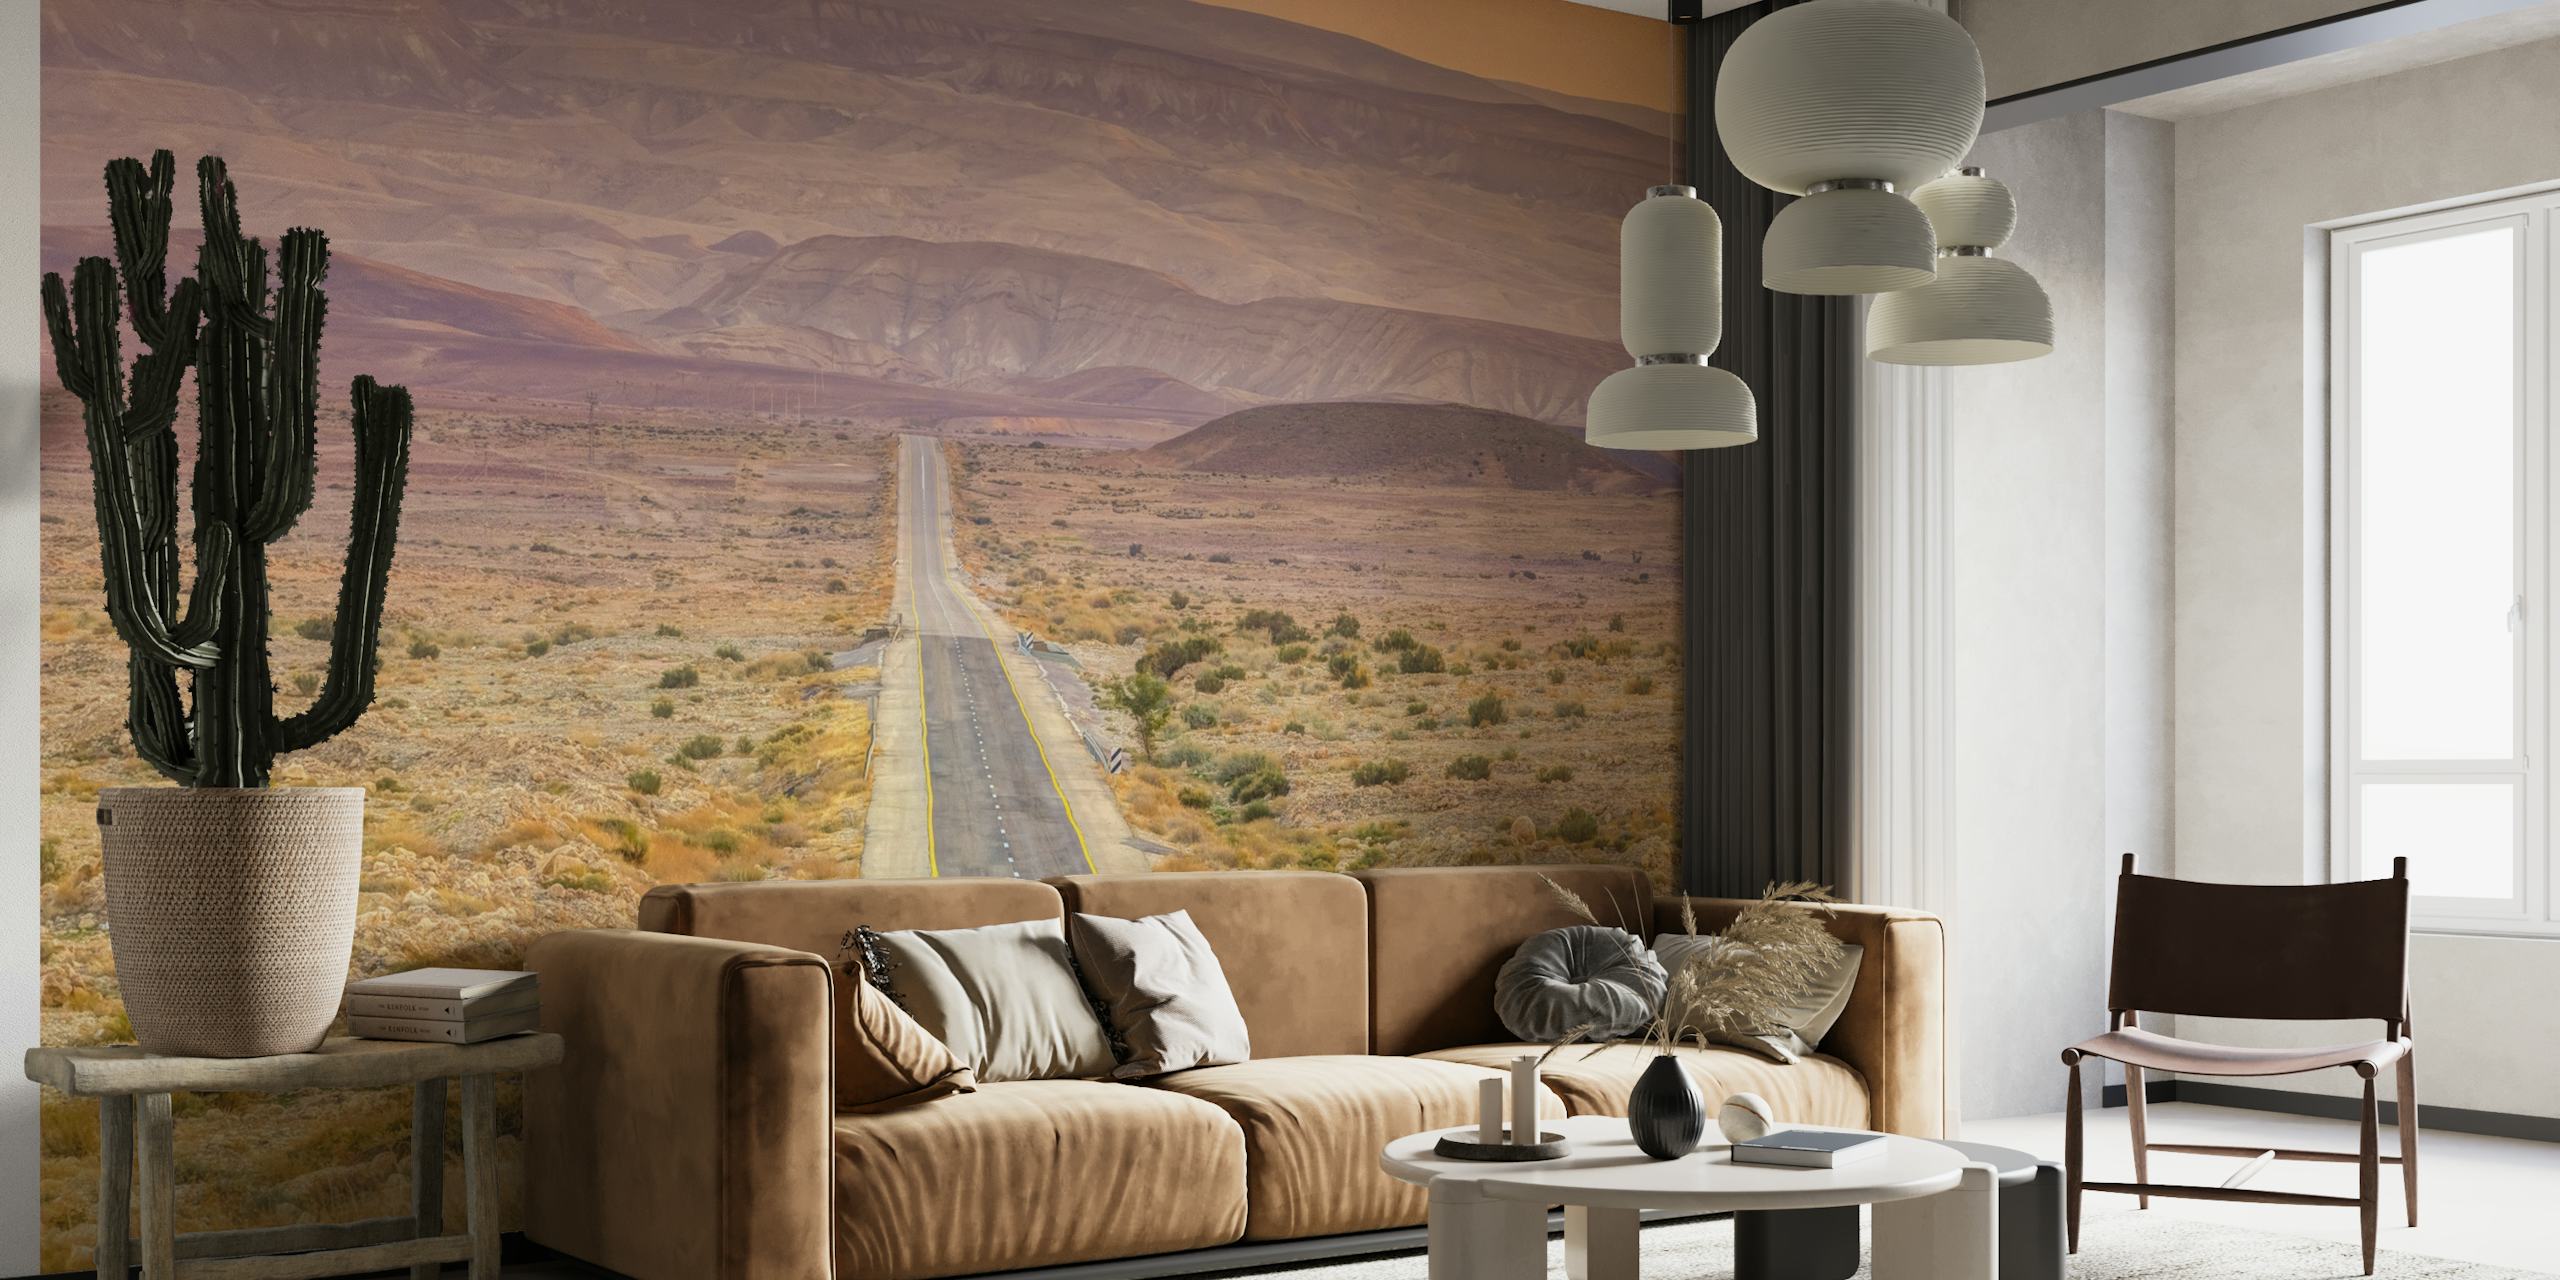 Highway through desert tapetit